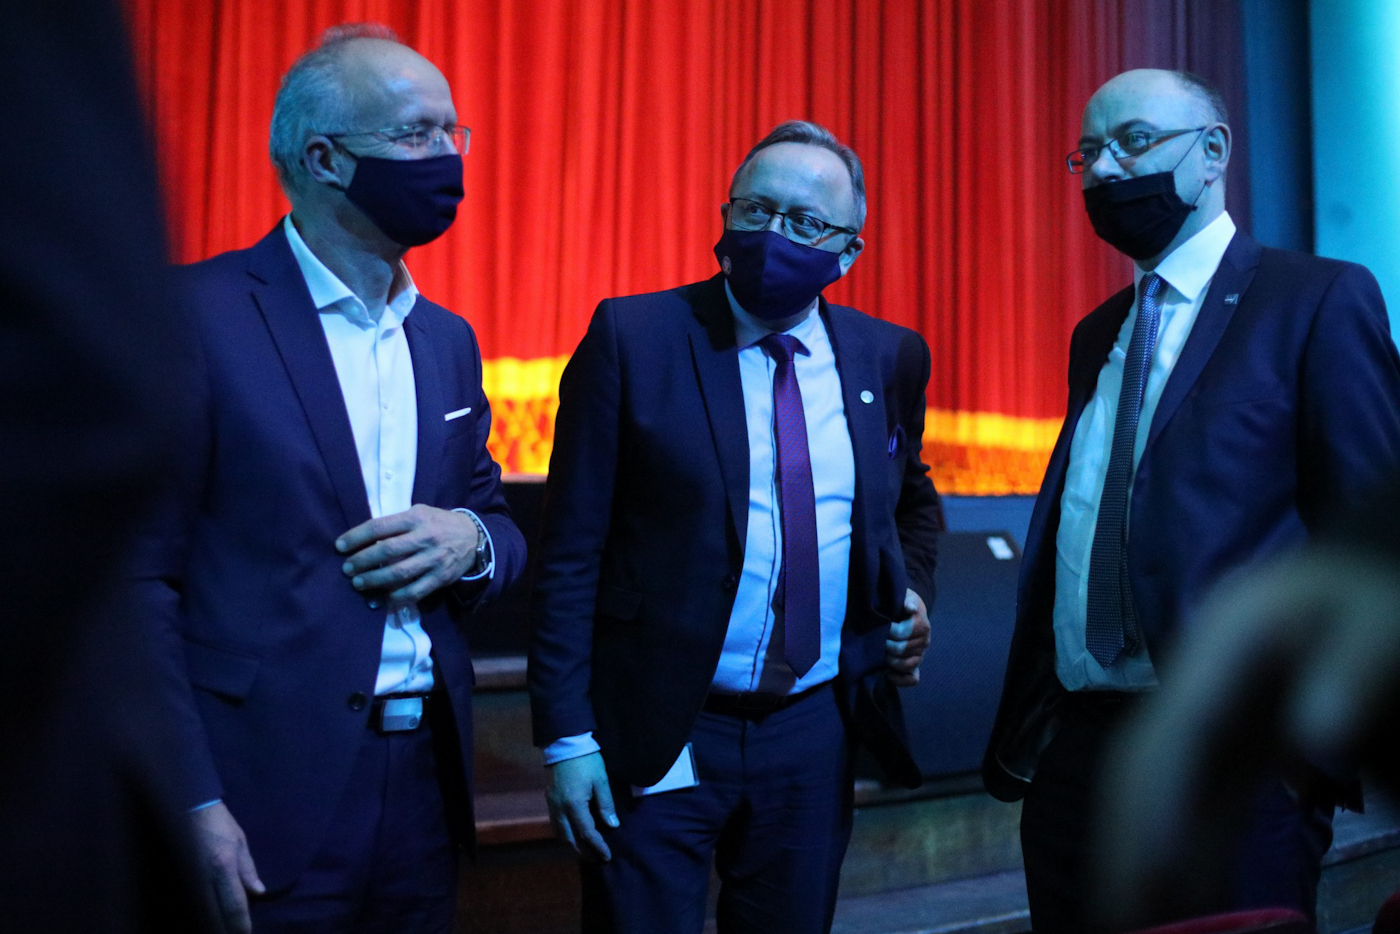 Zastępcy prezesa IPN (od lewej): dr hab. Krzysztof Szwagrzyk, dr hab. Karol Polejowski i dr Mateusz Szpytma – Warszawa, 13 grudnia 2021. Fot. Sławek Kasper (IPN)